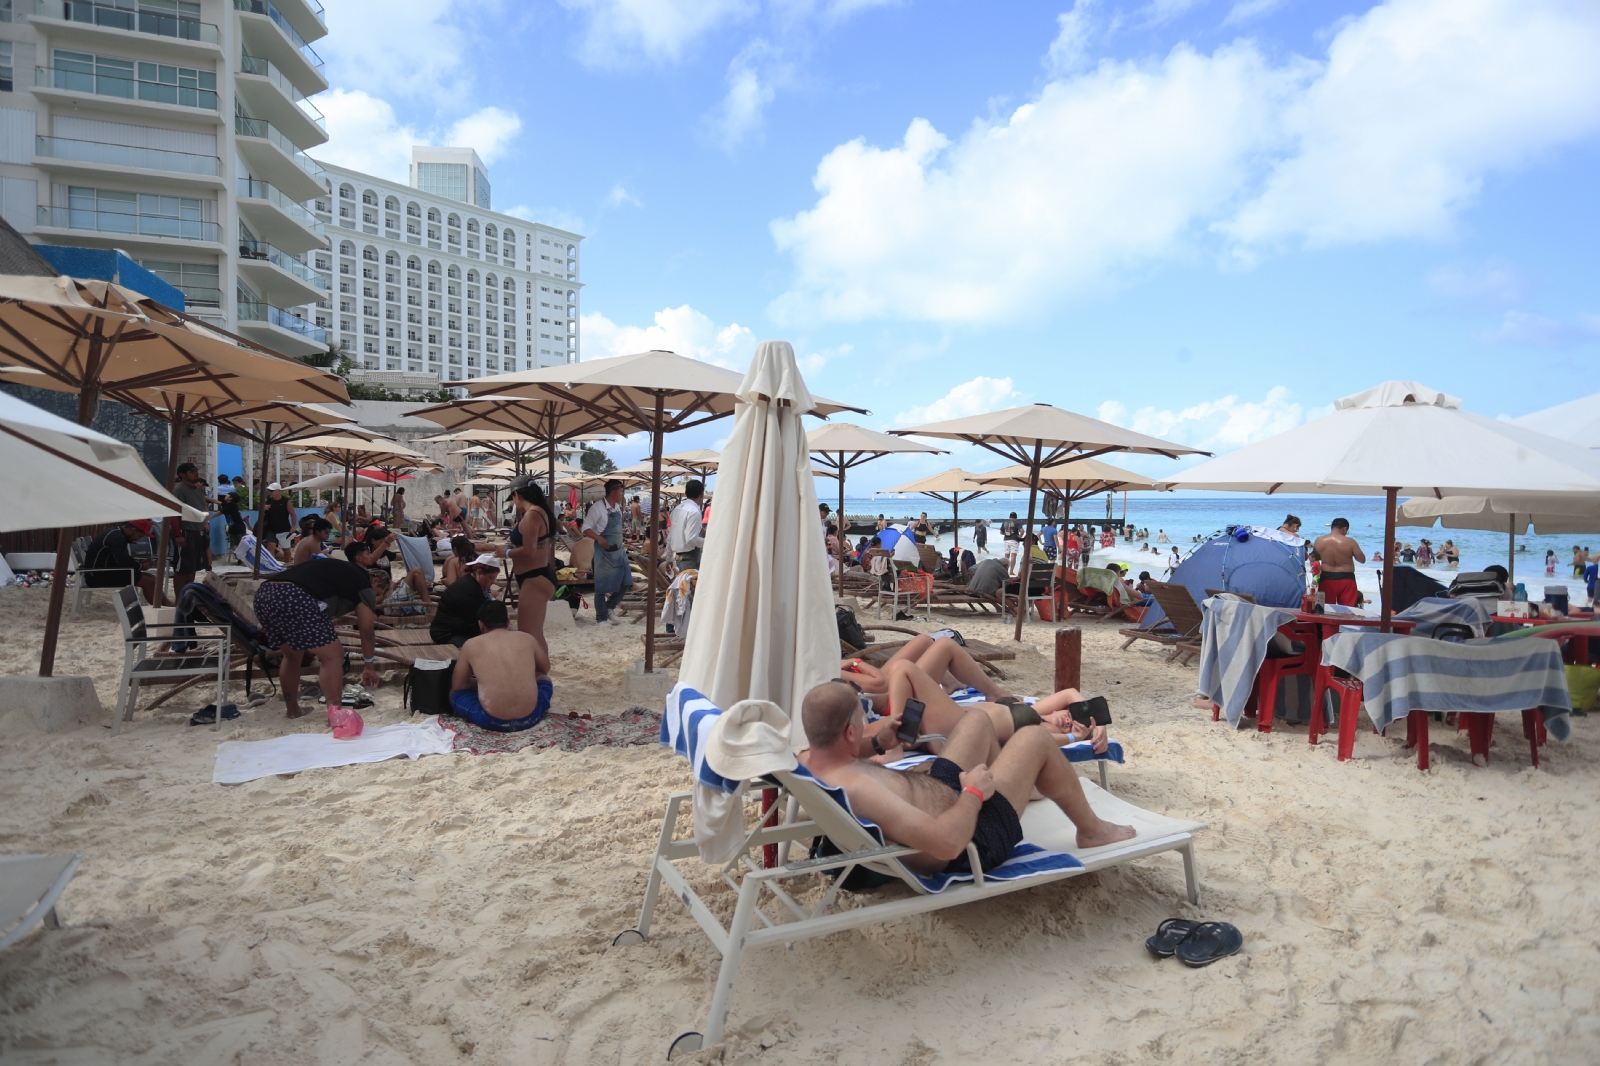 Los hoteles de Cancún registran ocupación del 90%